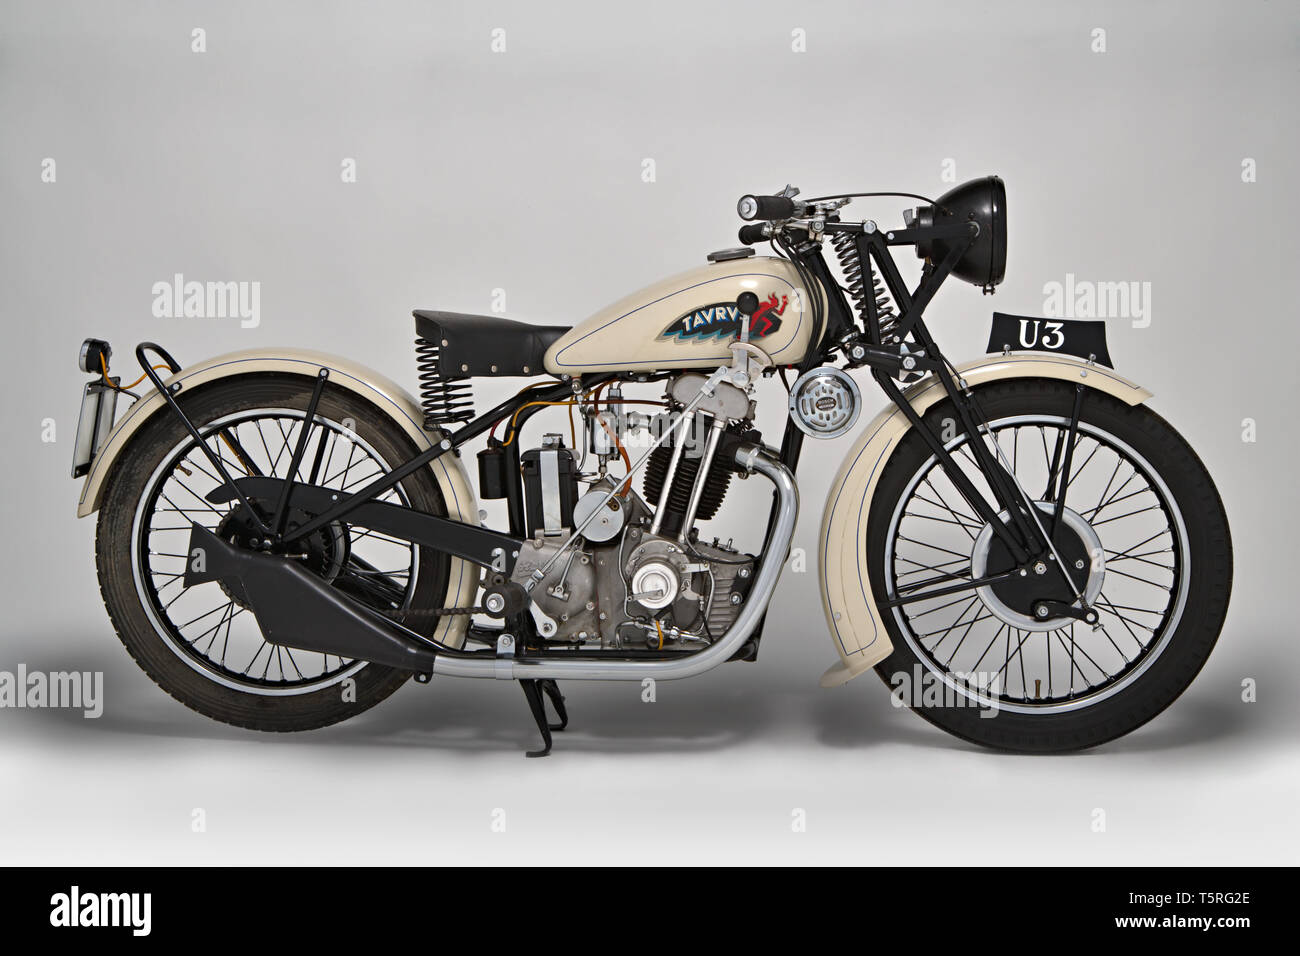 Moto d'epoca 175 Taurus Marca : Taureau modello : 175 U3 nazione : Milano - Italia e Modena anno : 1934 conditions : restaurata cilindrata : Banque D'Images